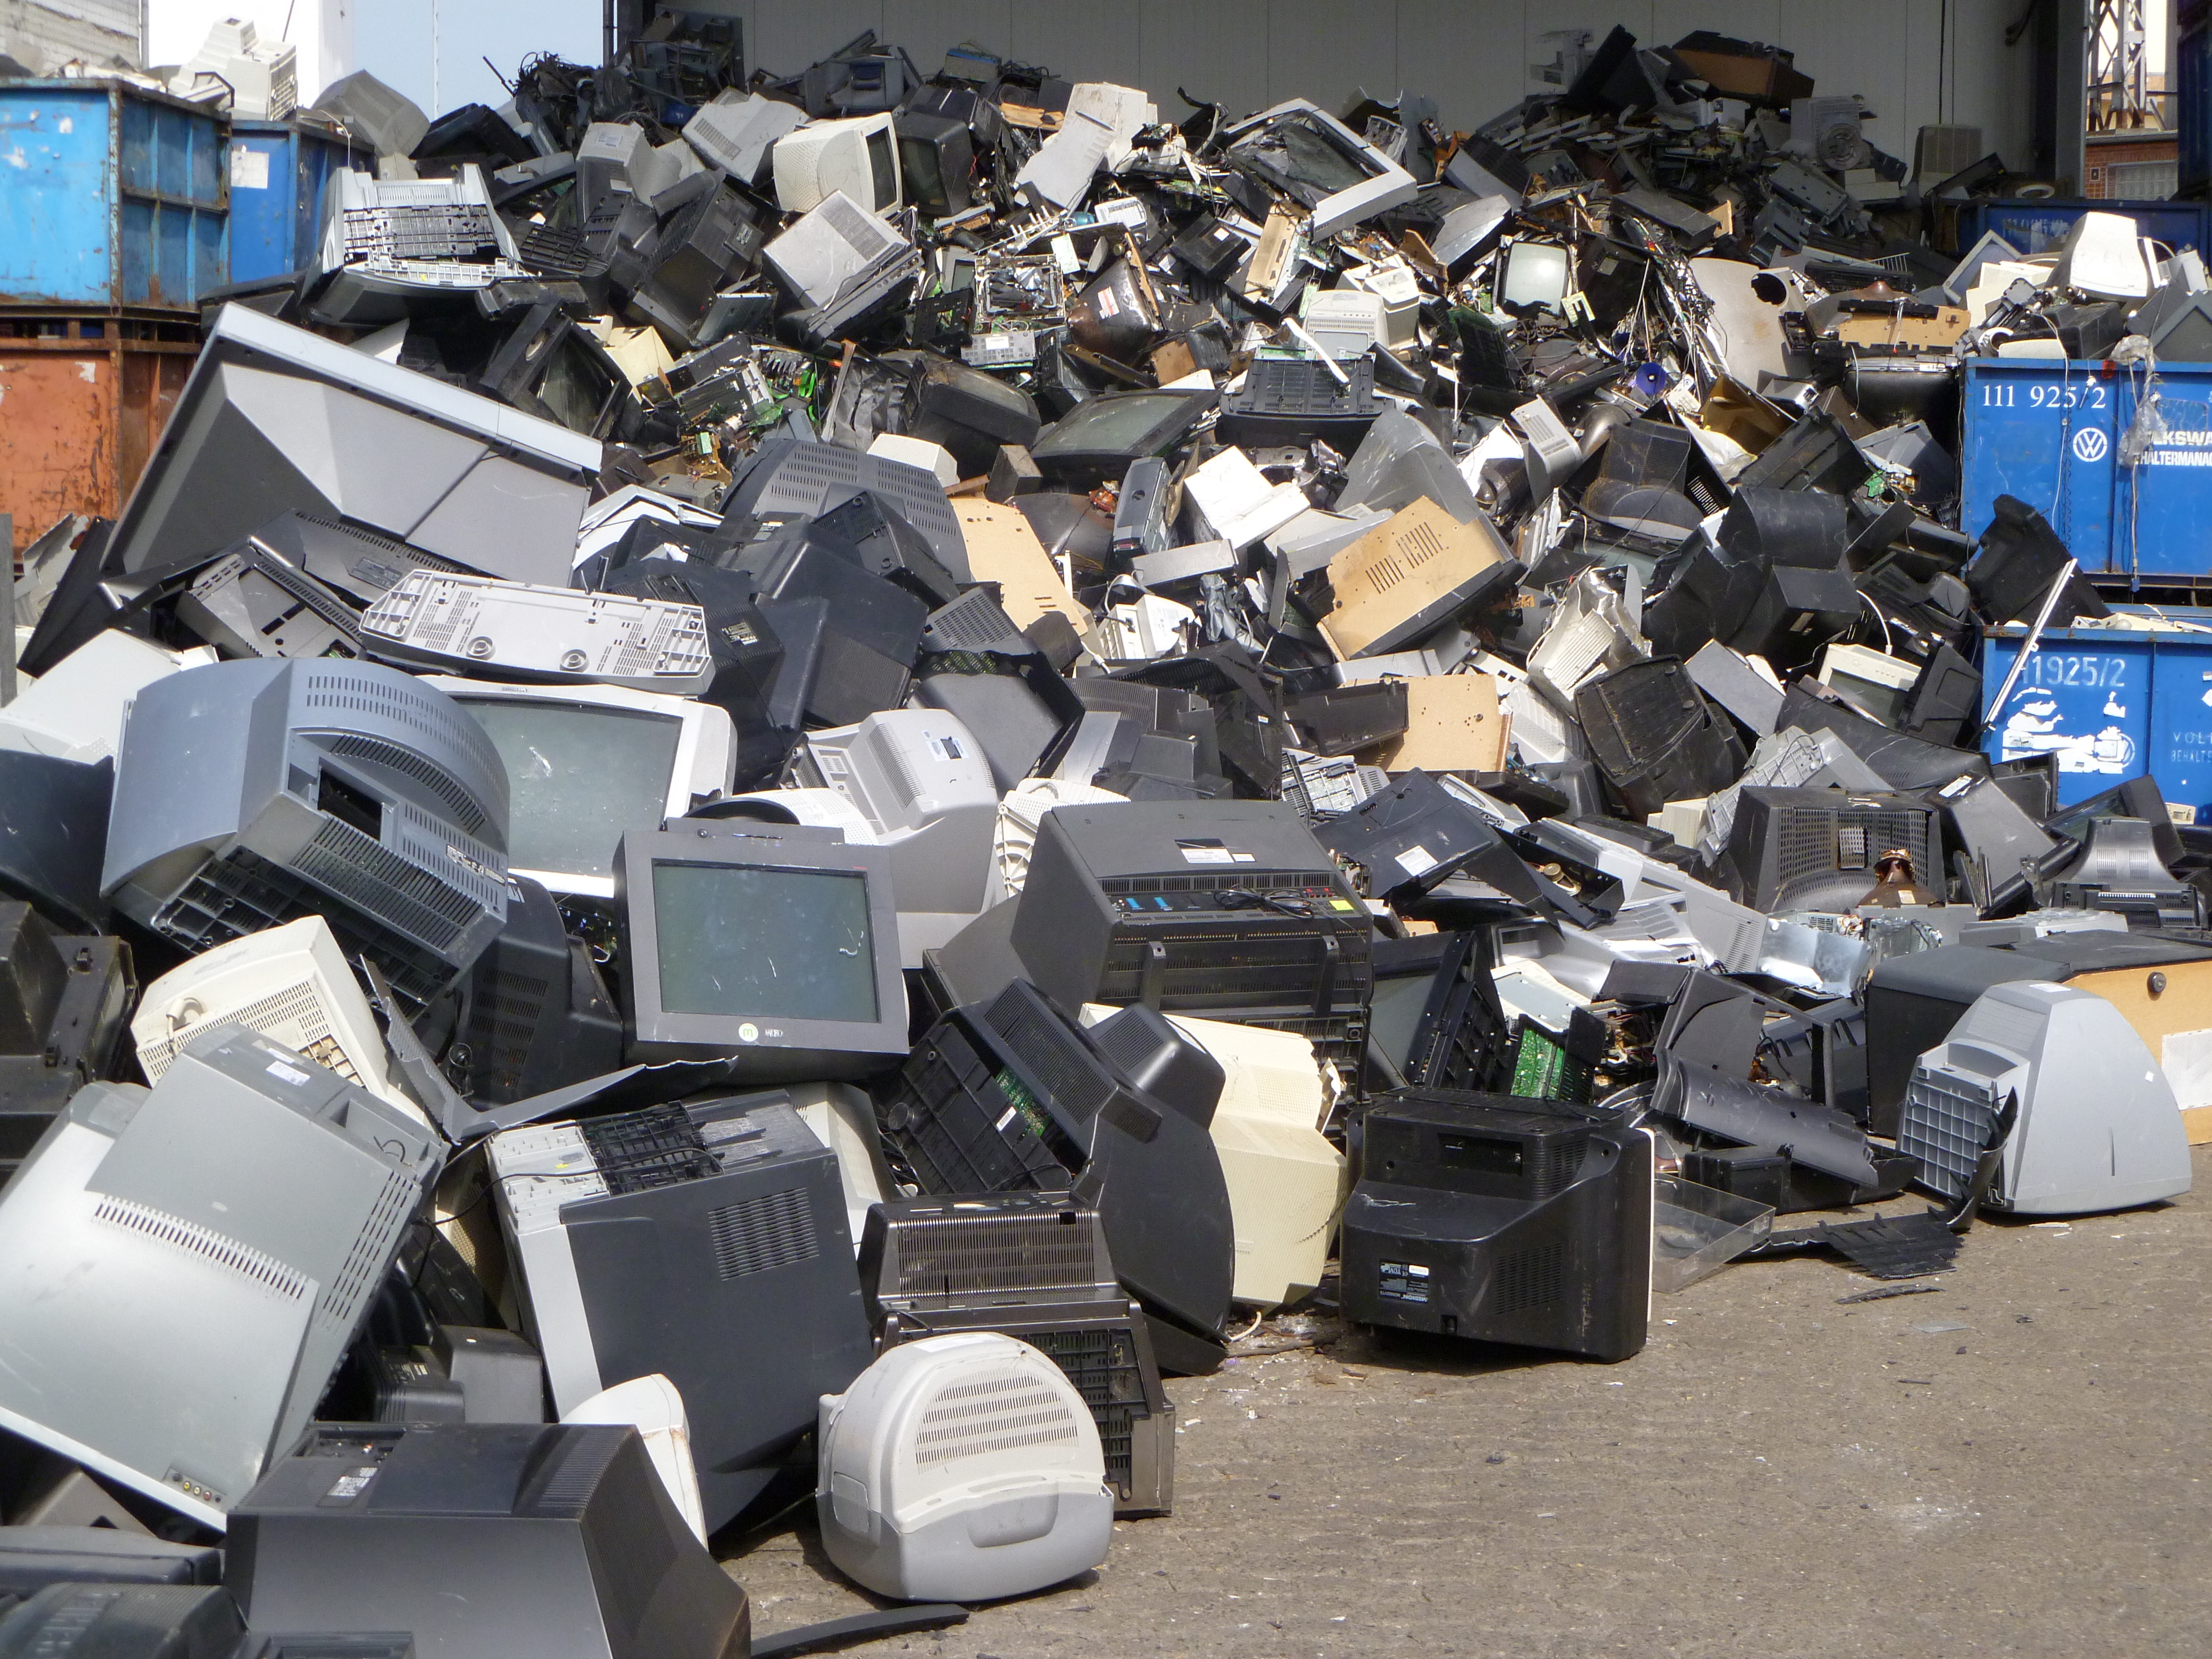 ÐÐ°ÑÑÐ¸Ð½ÐºÐ¸ Ð¿Ð¾ Ð·Ð°Ð¿ÑÐ¾ÑÑ "Old Electronic Devices Provide Precious Metals for Recyclers""